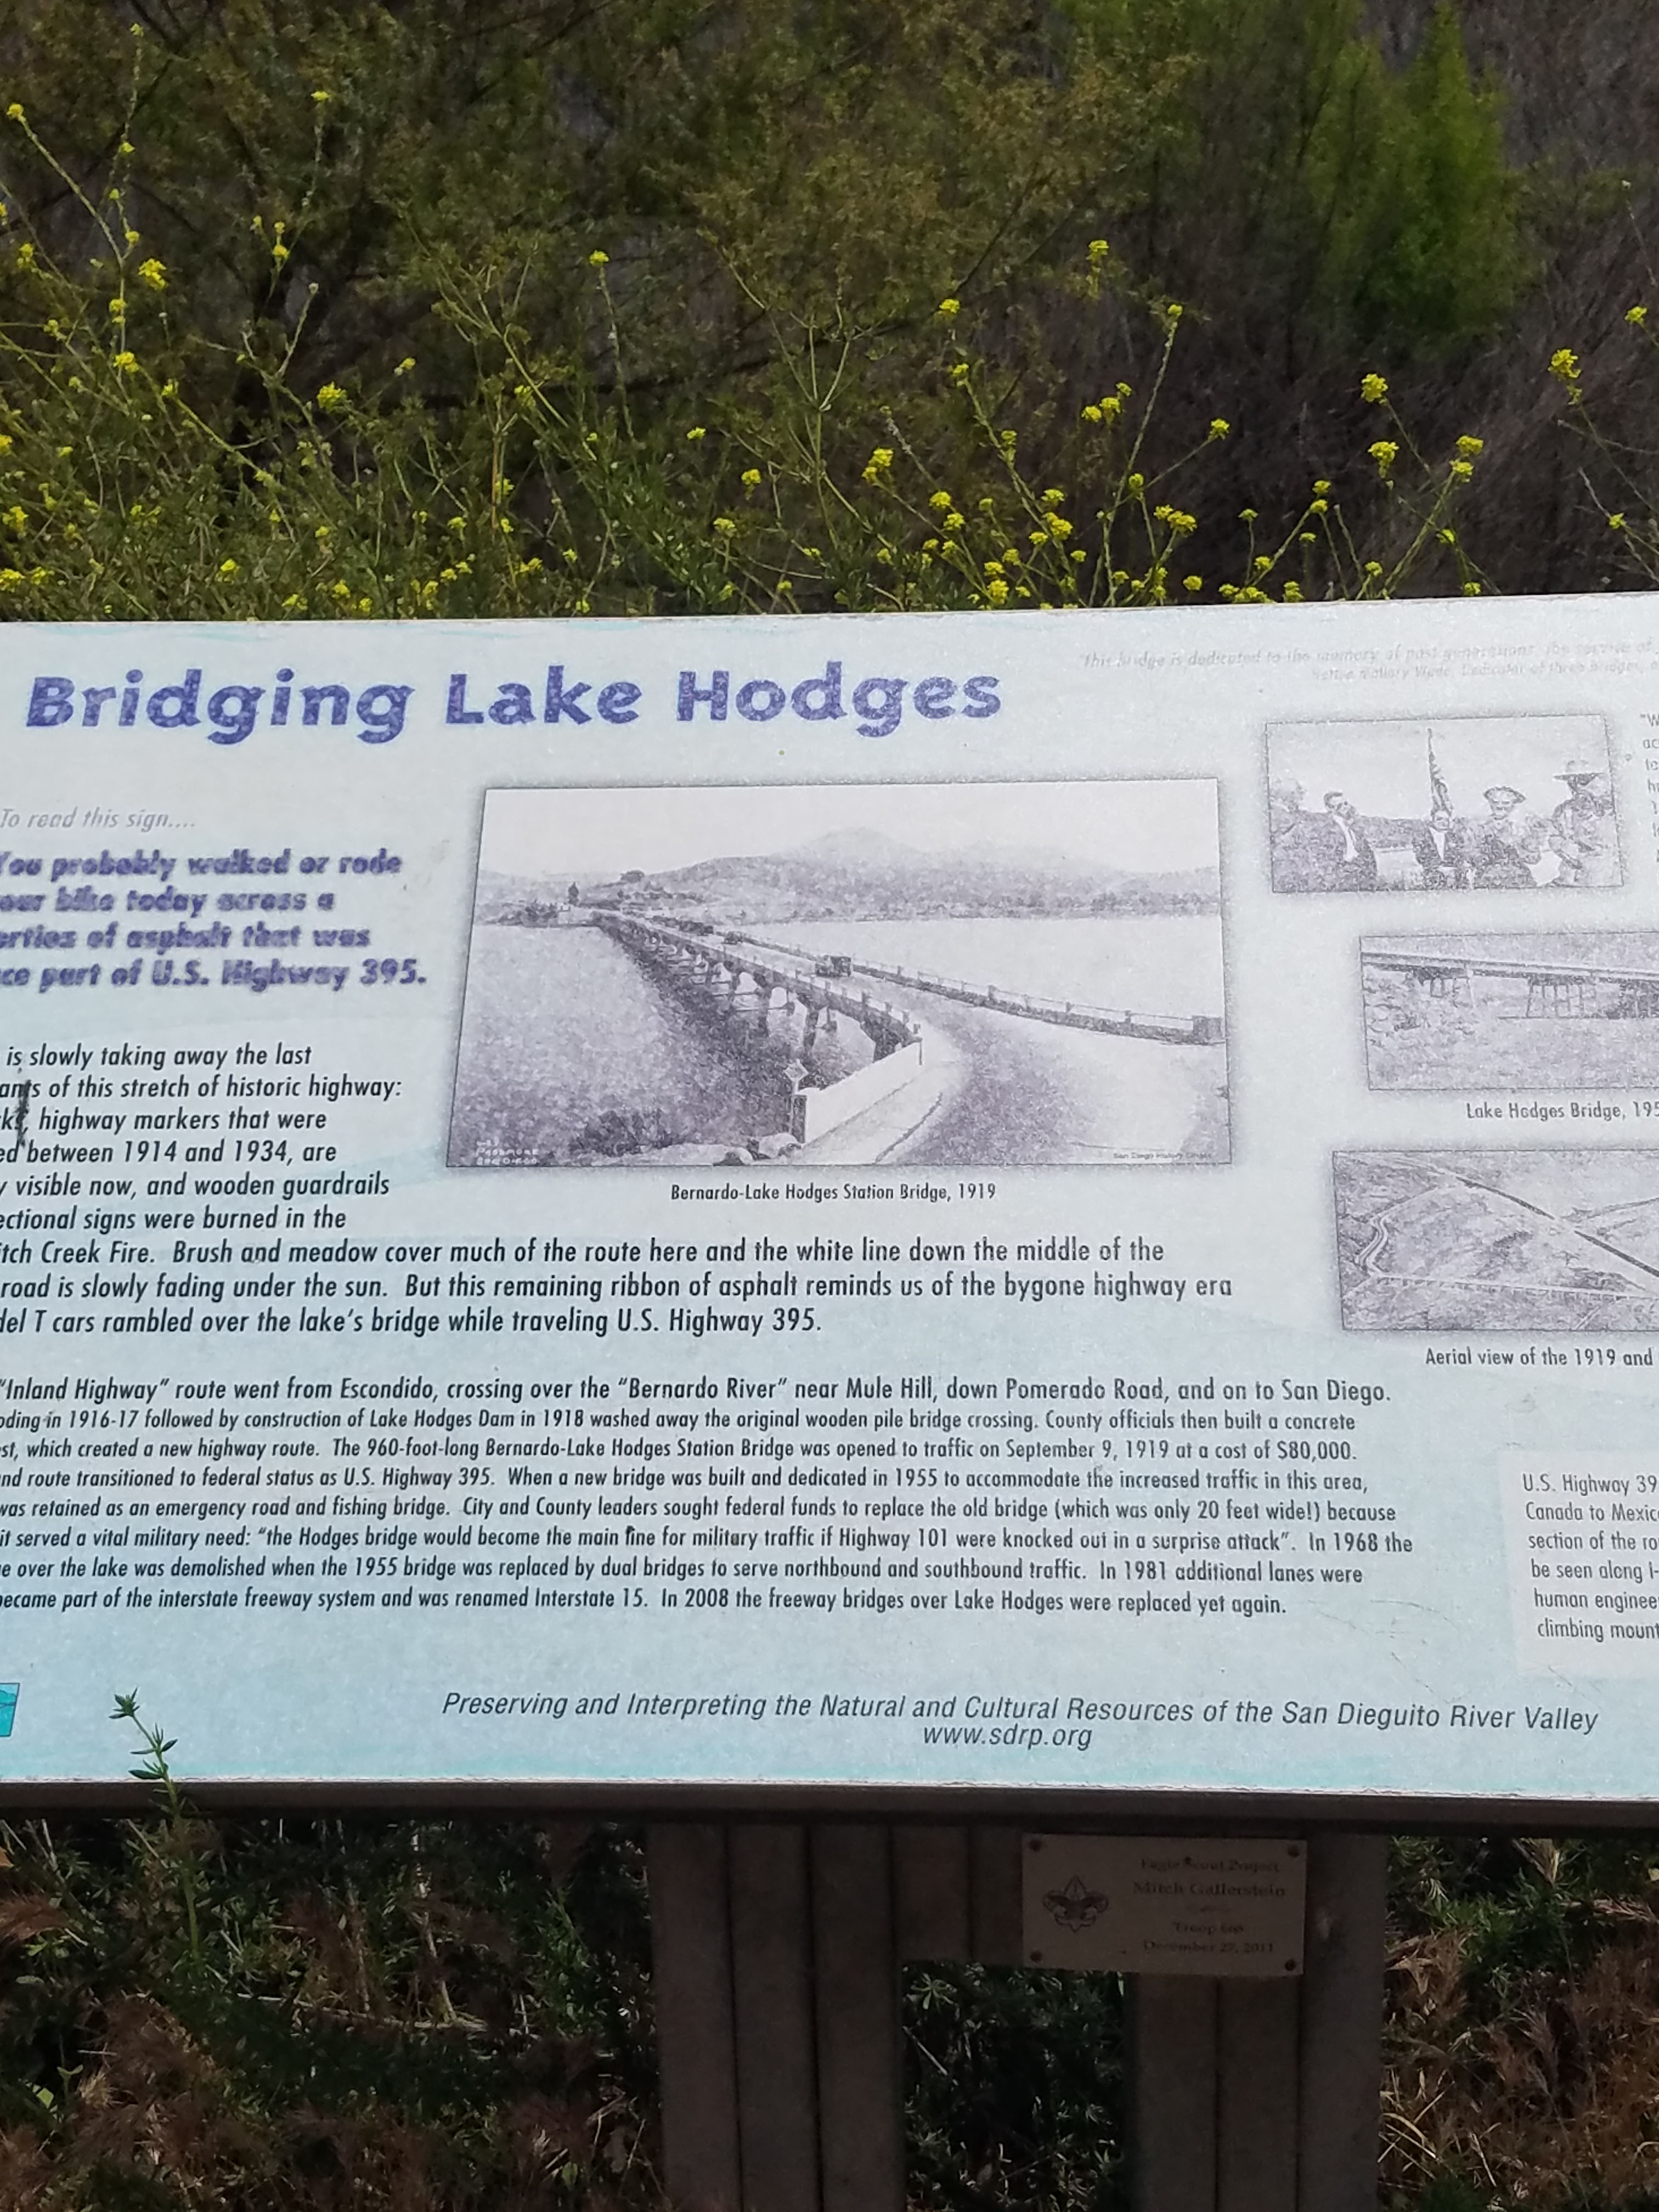 Lake Hodges Bicycle Pedestrian Bridge